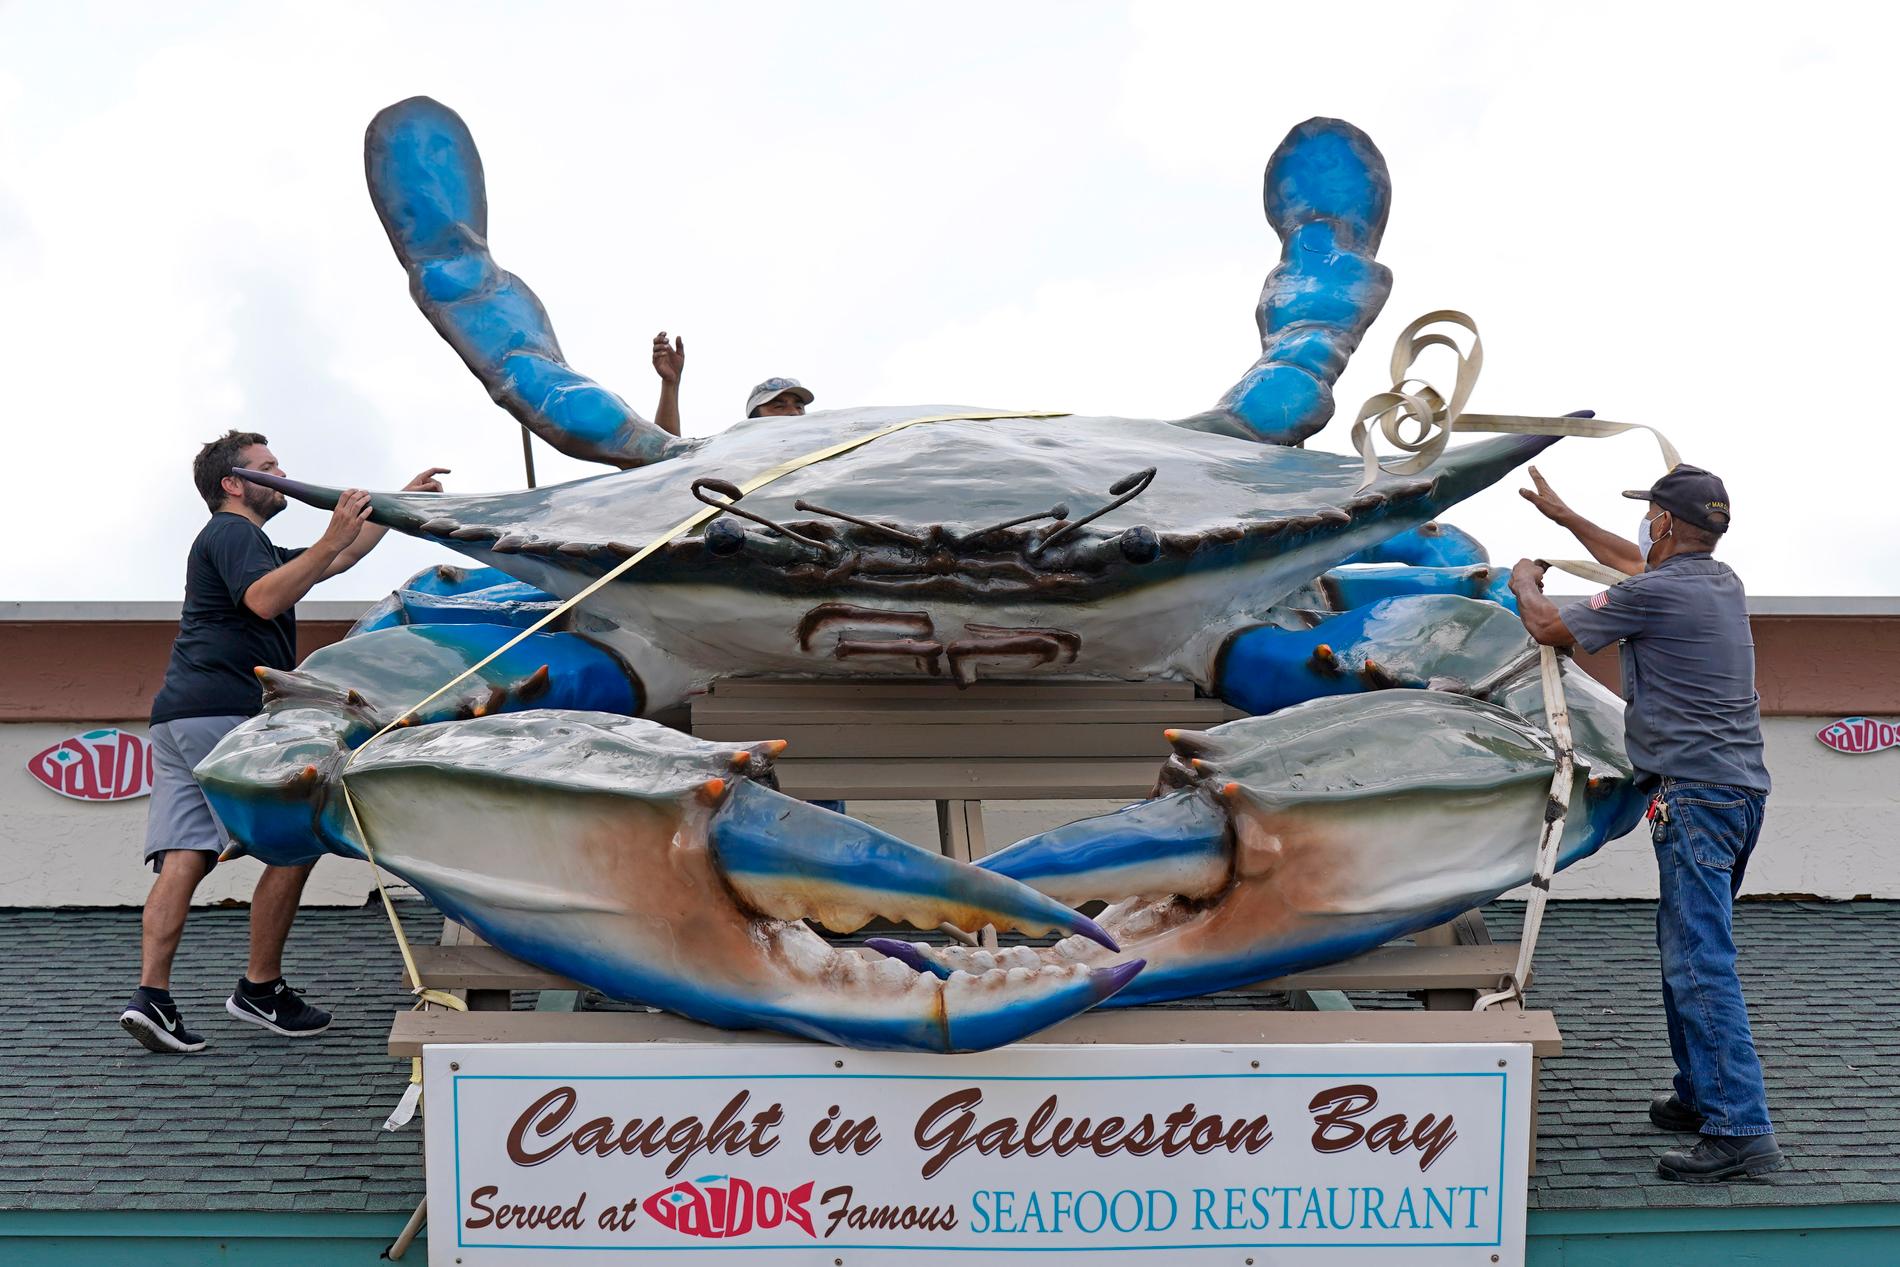 Personal försöker med remmar säkra en gigantisk reklamfigur på Gaido's Seafood Restaurant i Galveston, Texas, inför Lauras ankomst.